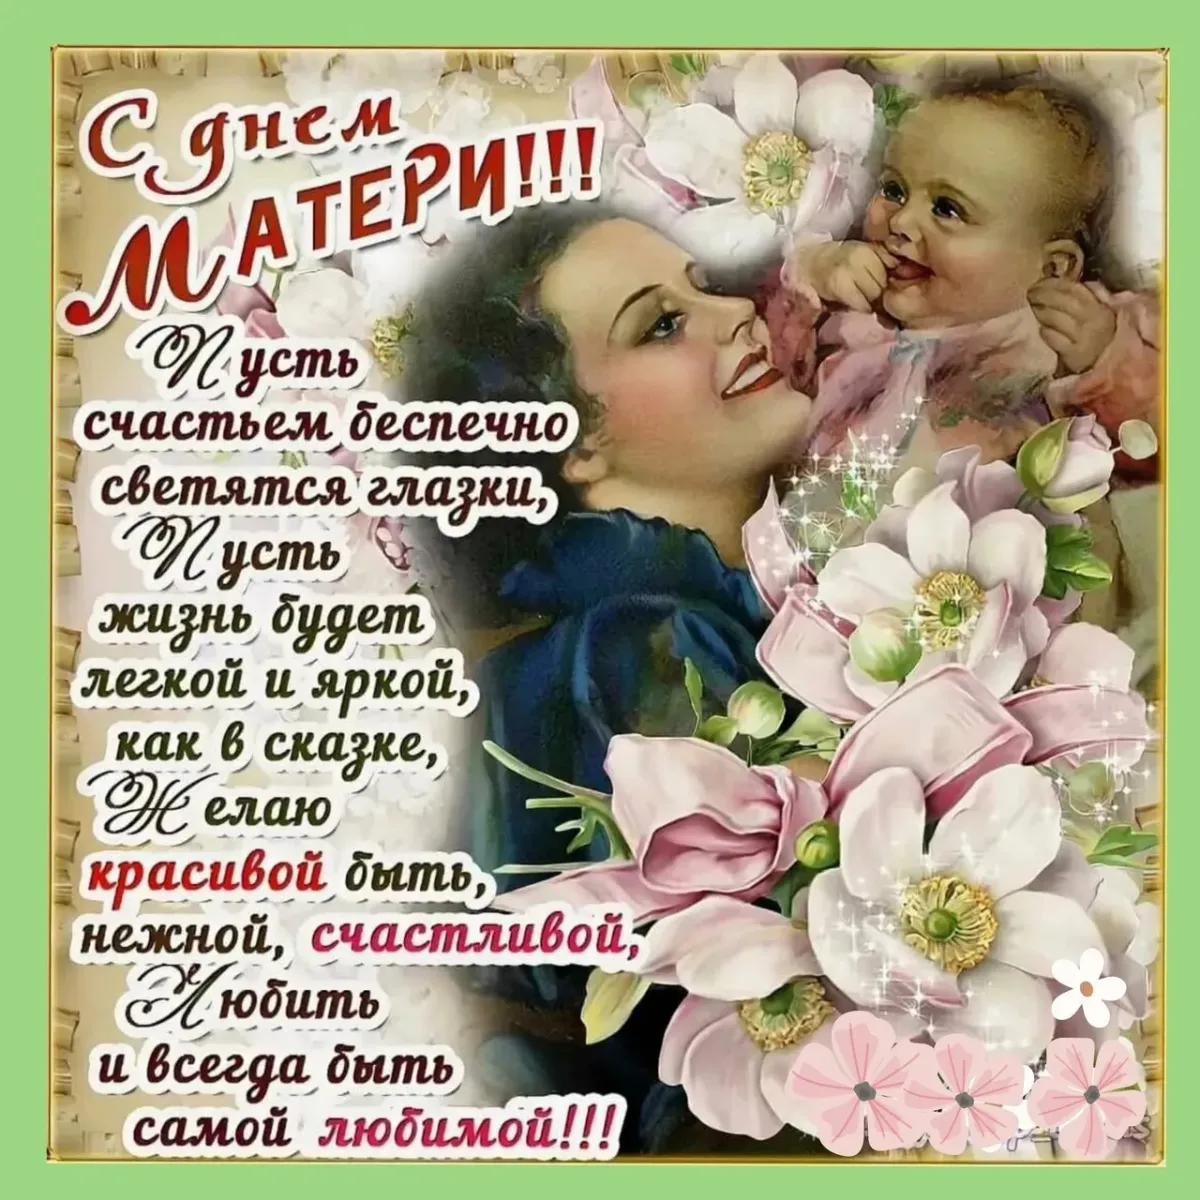 День матери бесплатные поздравления. Поздравления с днем ма ери. Поздравление с днем Матри. Поздравление стдем матери. Поздравление снем матери.